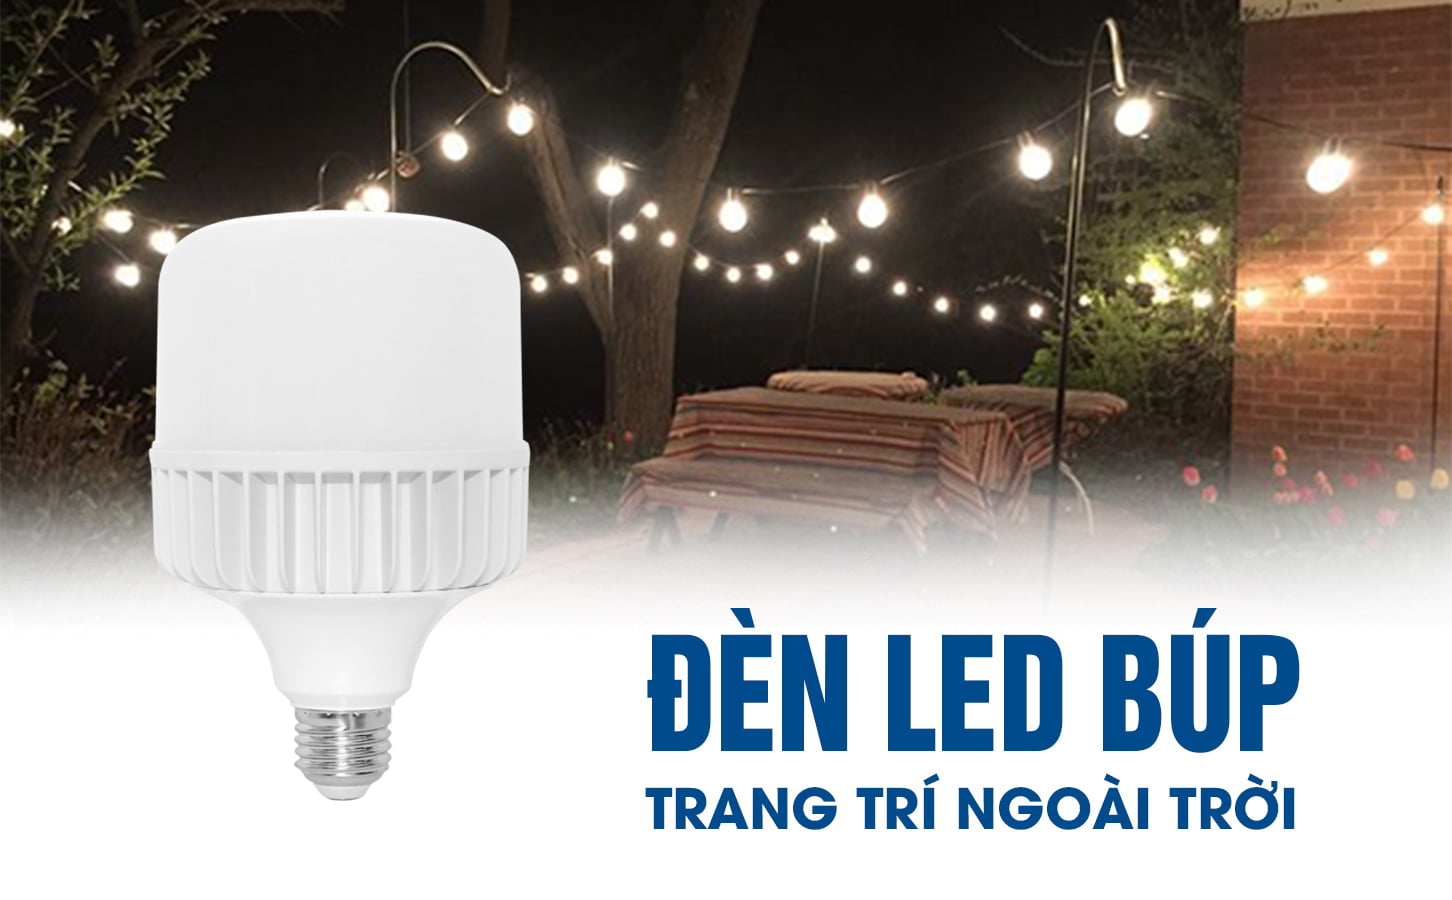 Đèn LED búp 15w sử dụng trong nhà hay ngoài trời